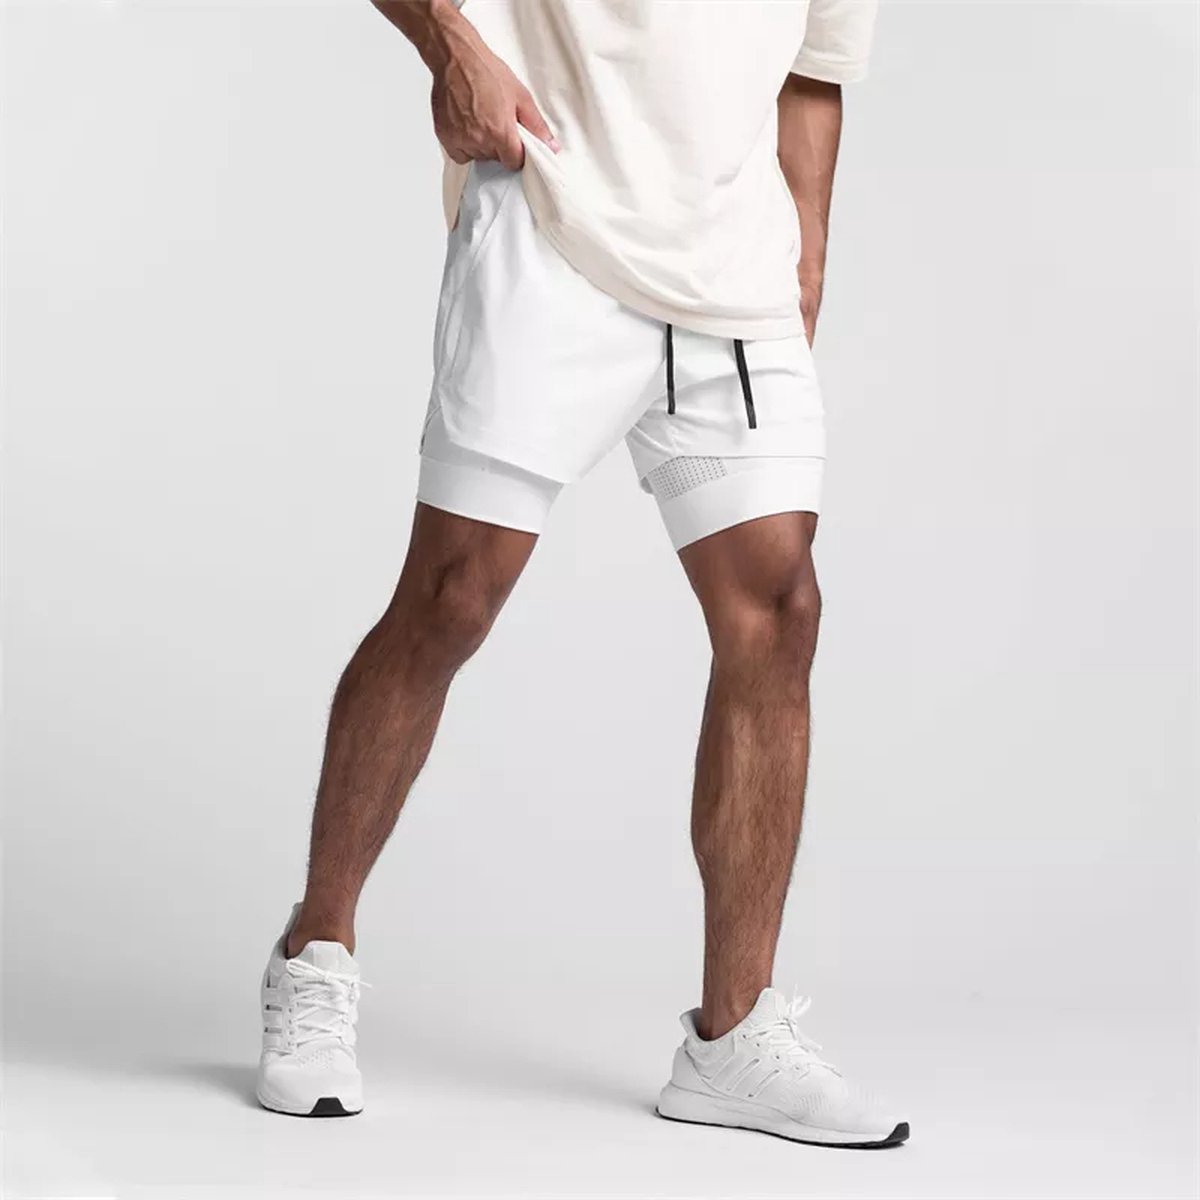 CLARRI® - Sportbroek voor Heren - Gym broek met mobiel zak en houder voor shirt - 3 in 1 Shorts – Hardloop & fitnessbroek – Wit Maat M